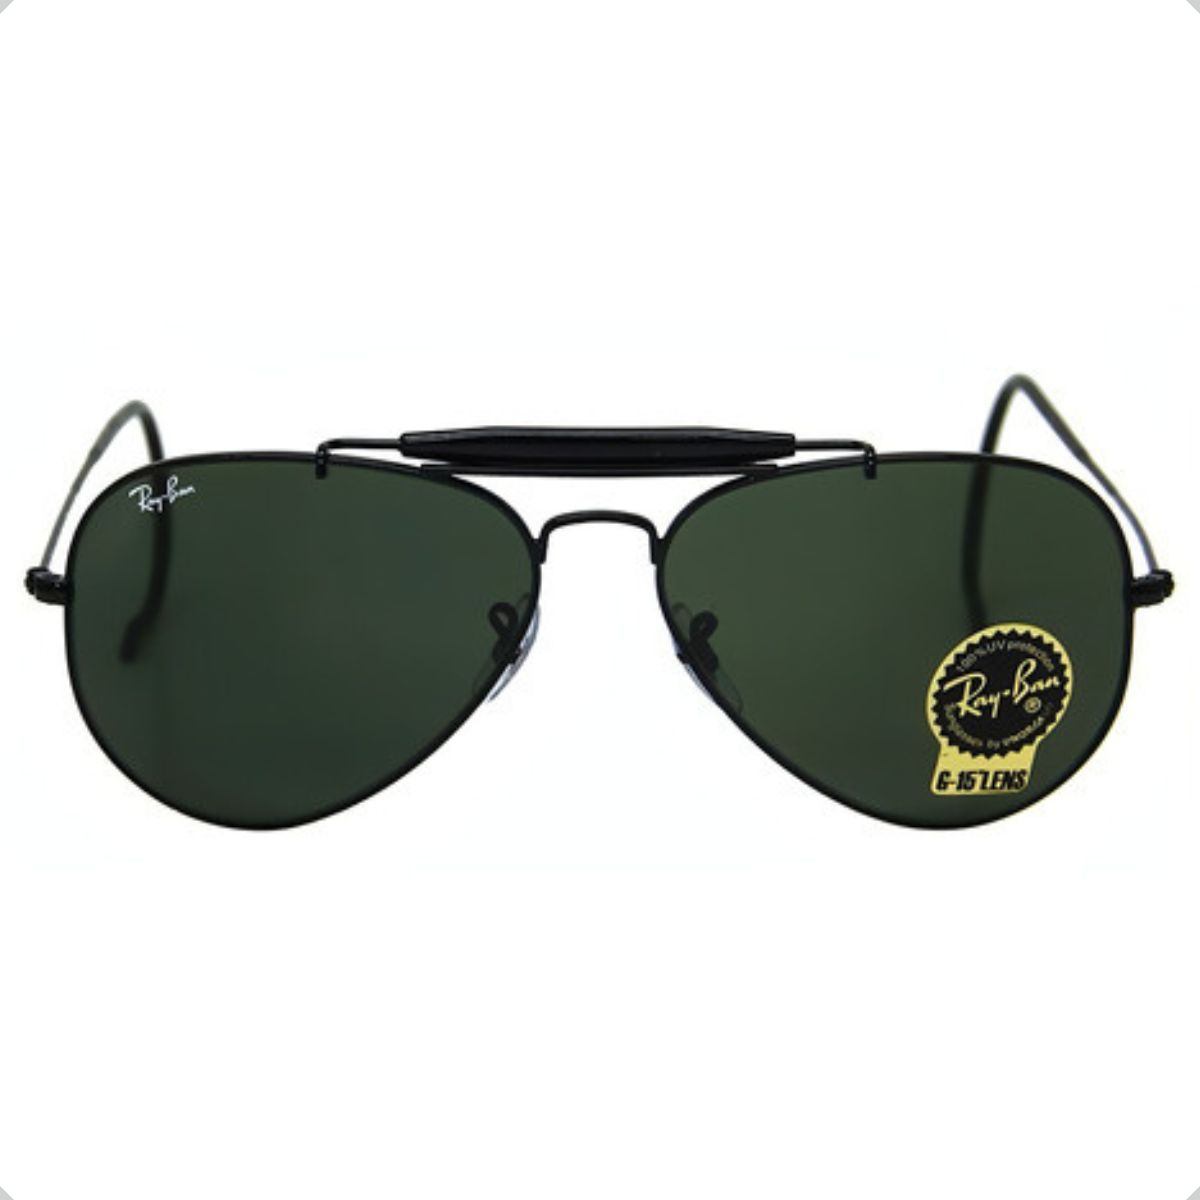 Lente Ray-ban G15 - as lentes verdes que protegem os olhos